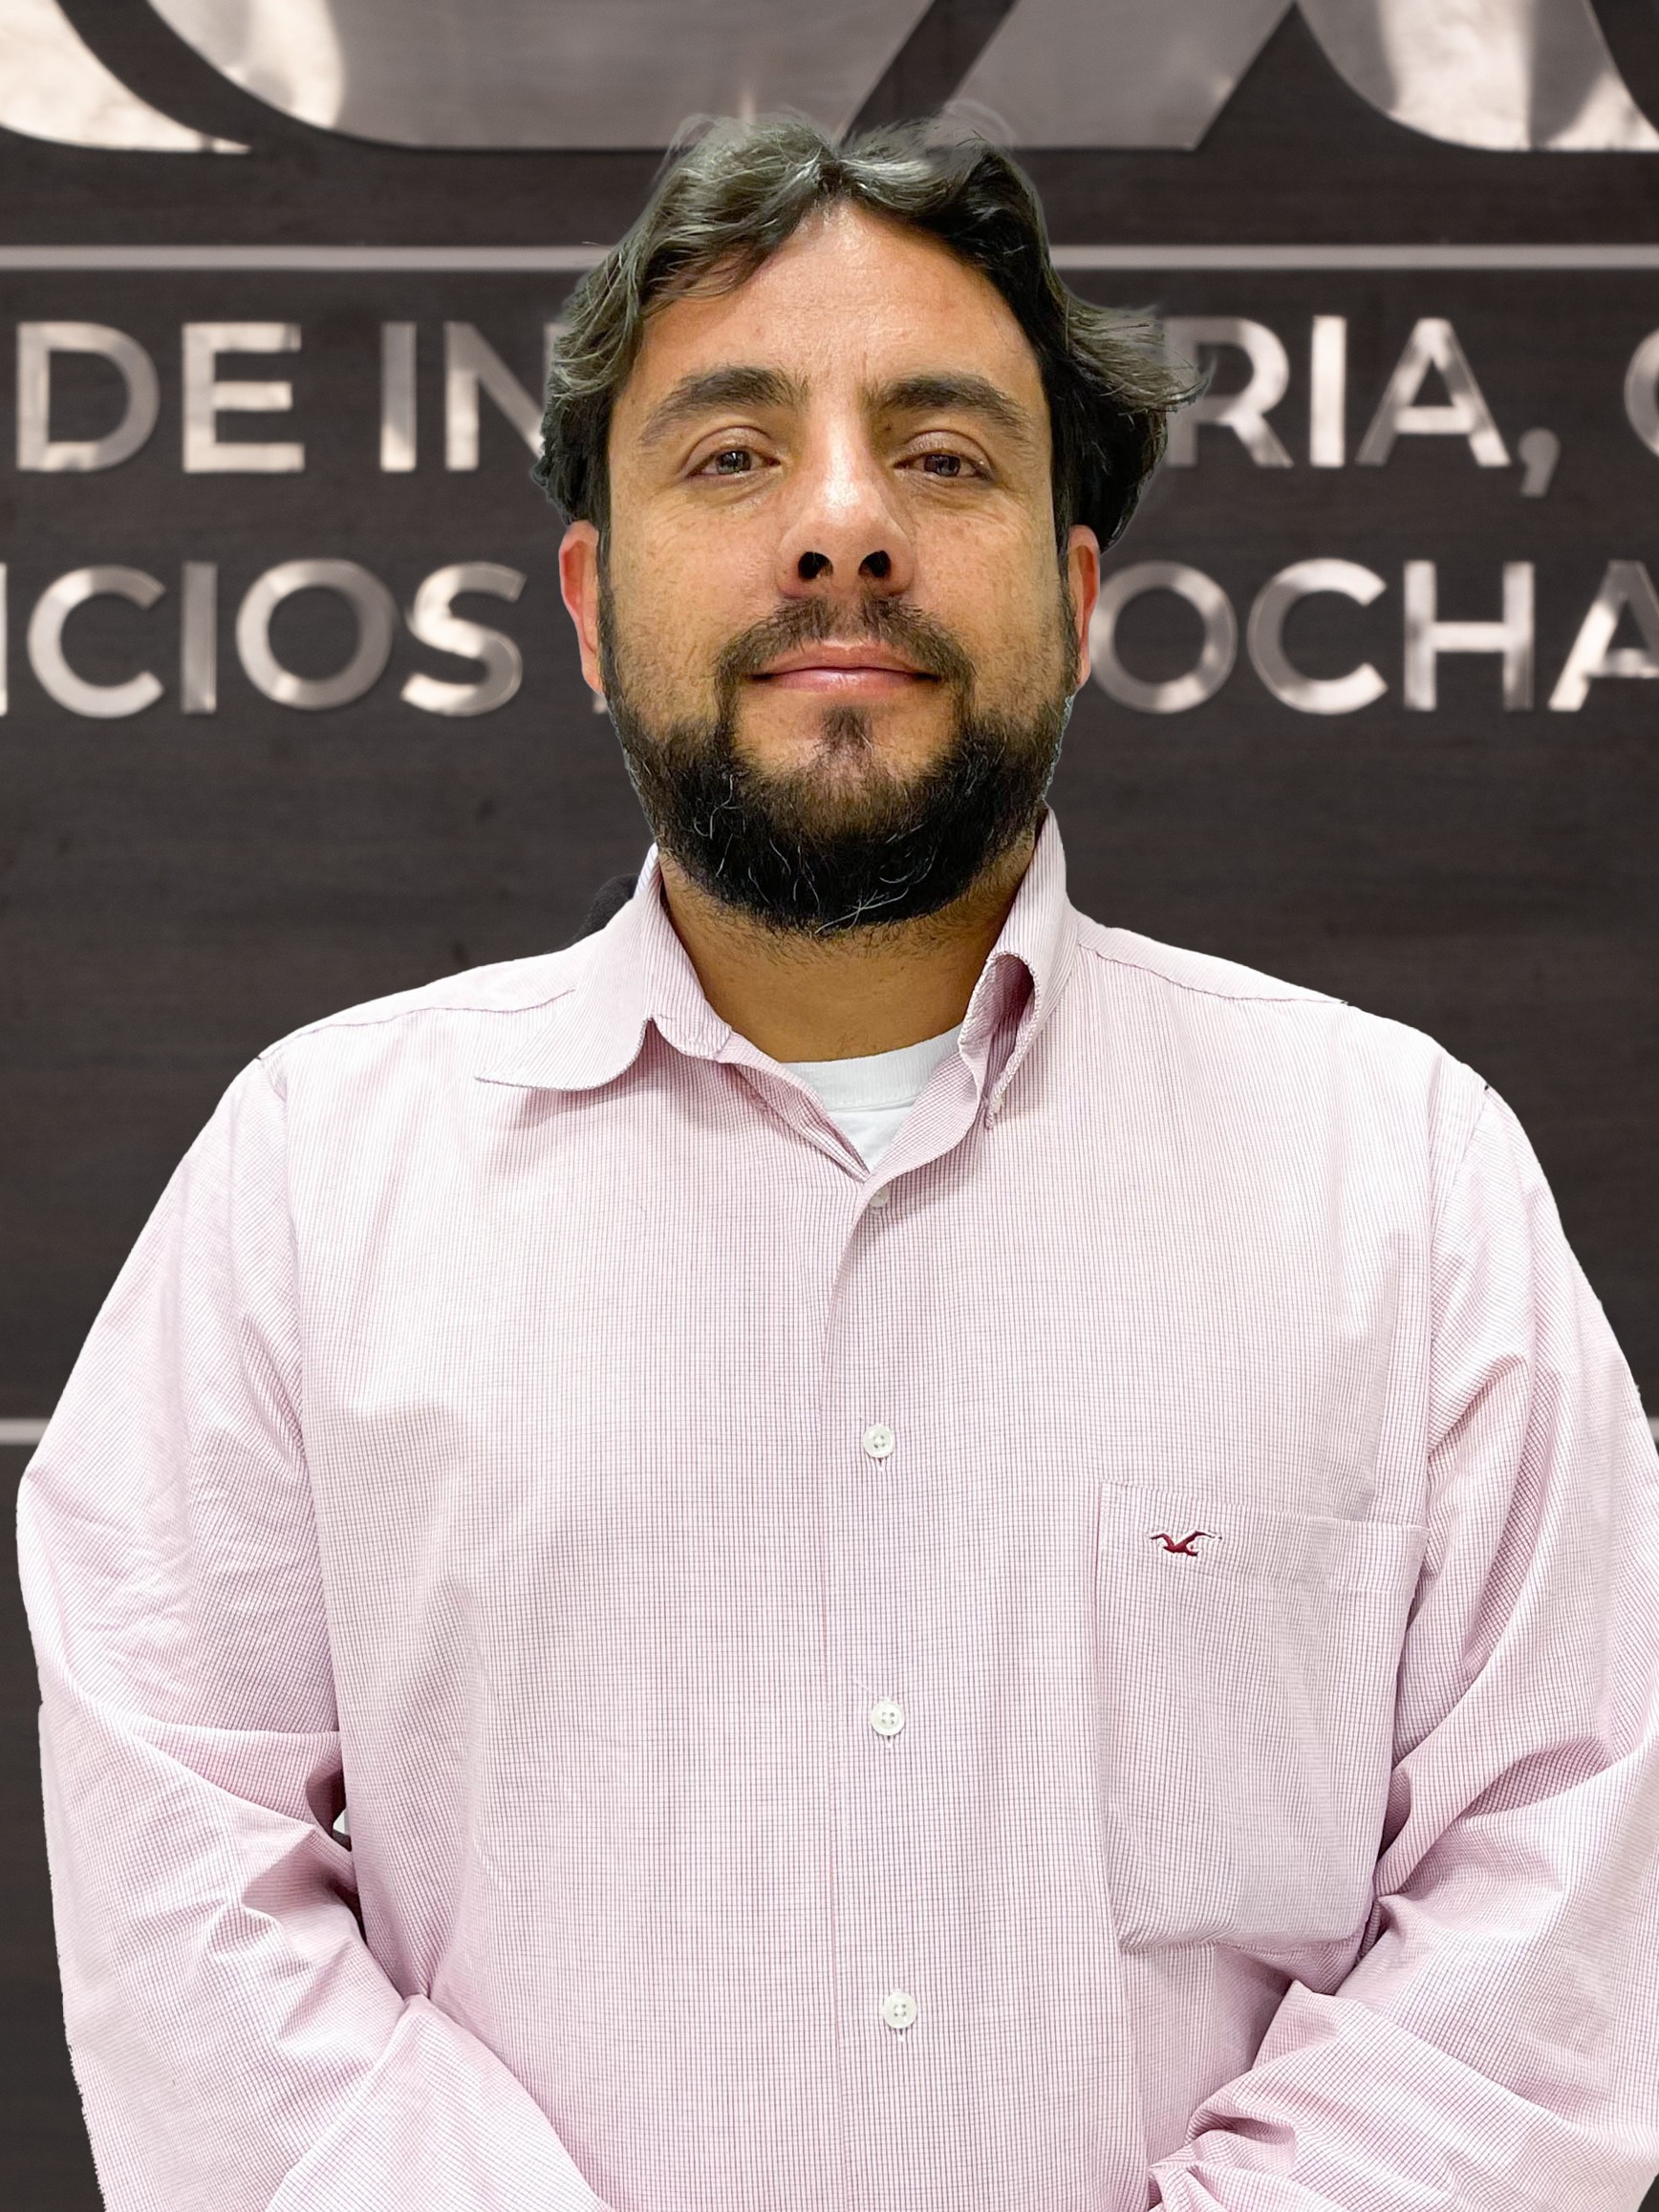 Carlos Alberto Molina Comboni